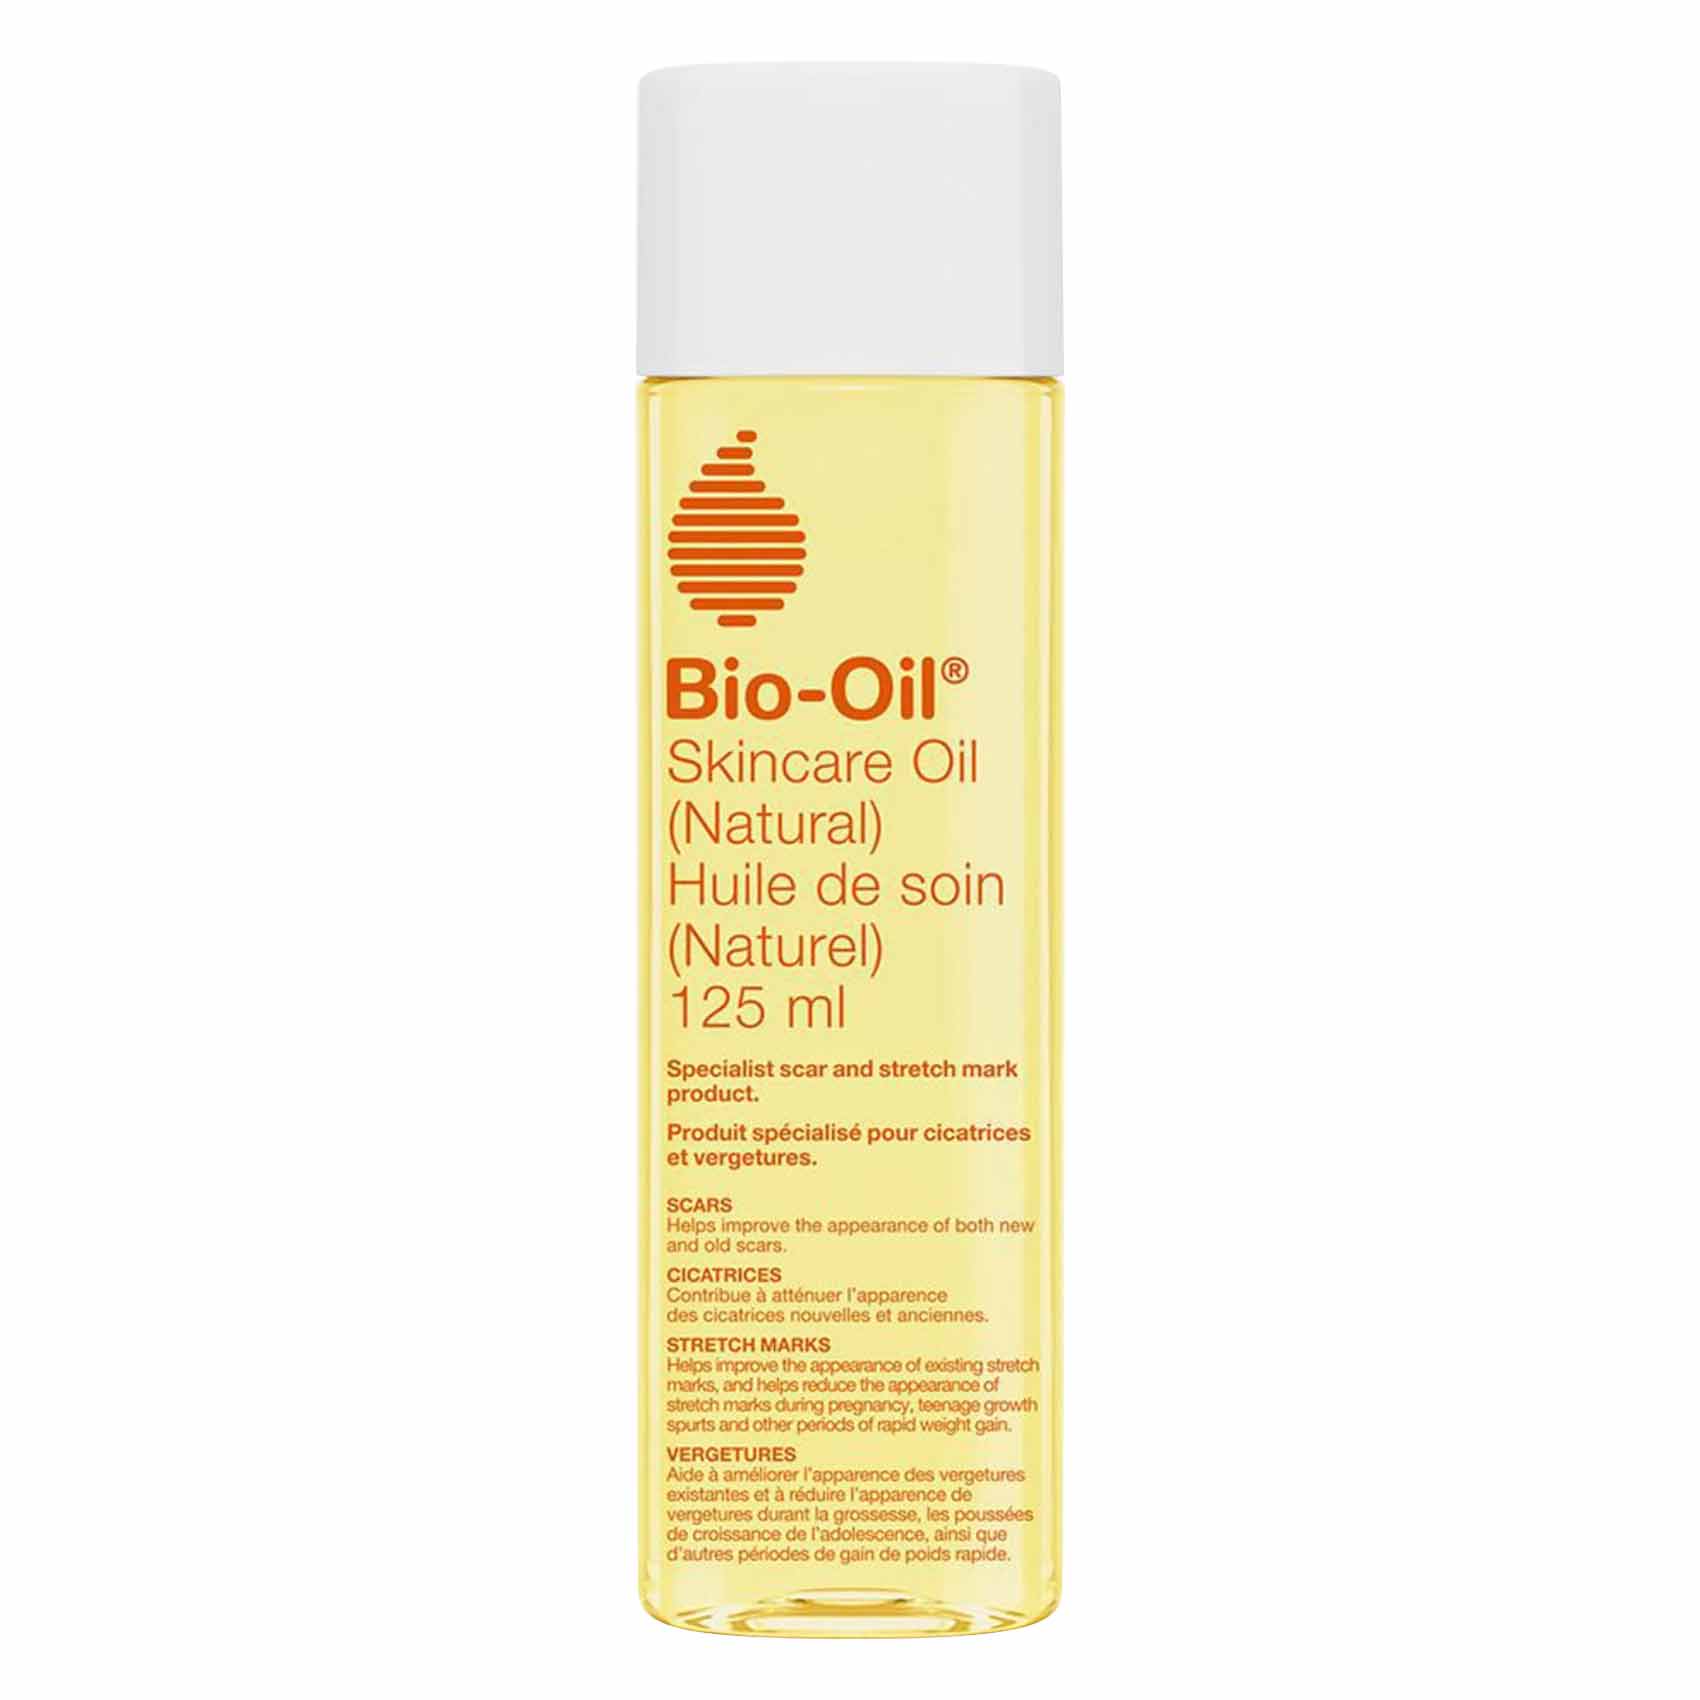 Biooil Natural Skincare Oil 125Ml